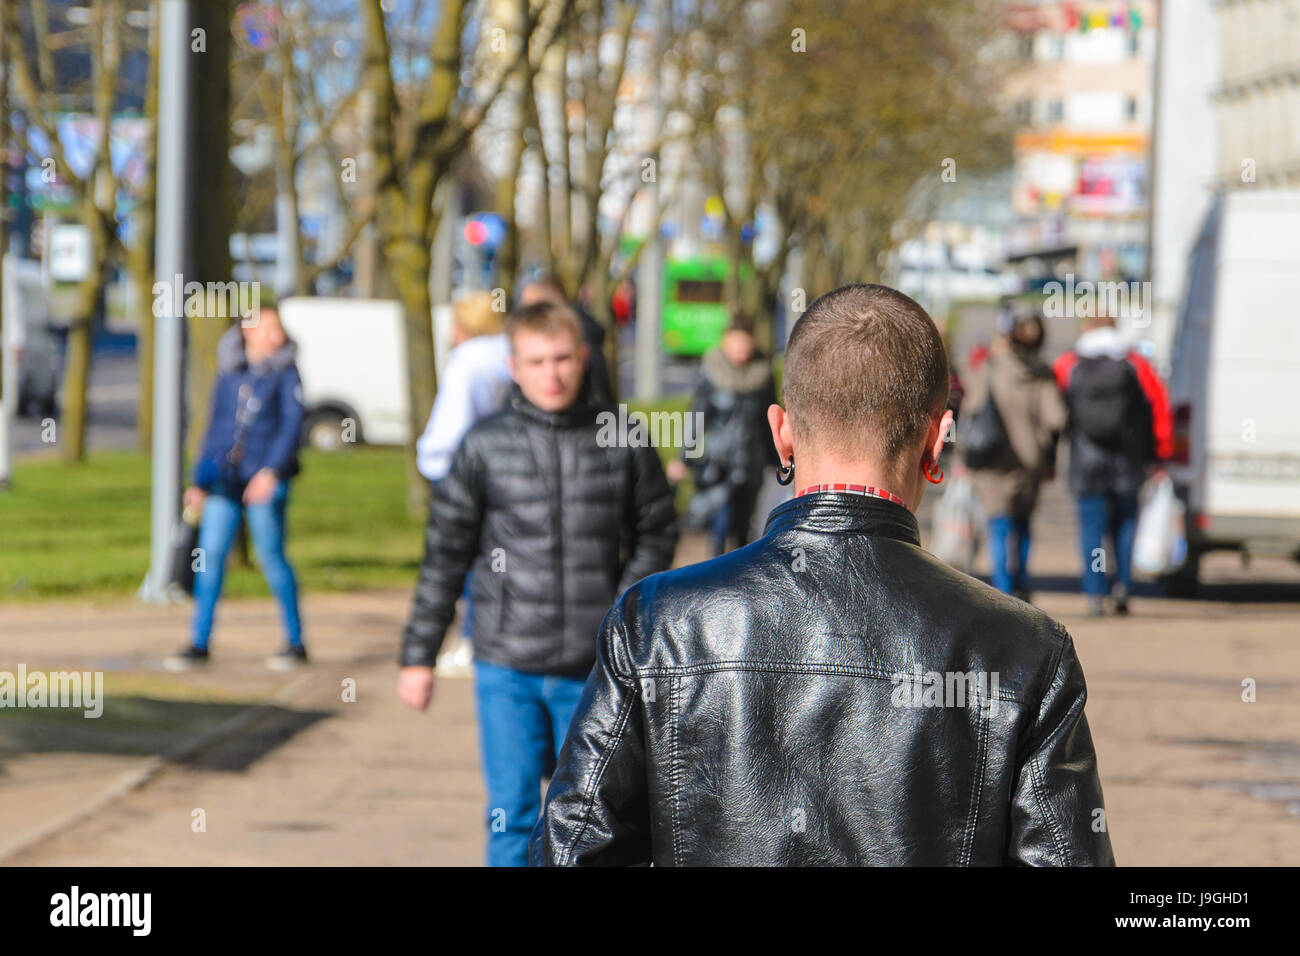 Minsk, Belarus - 22. April 2017: Ein junger Mann mit einem Kurzhaarschnitt und farbige Ohrringe in einer schwarzen Lederjacke geht weg. Blick von der Rückseite Stockfoto